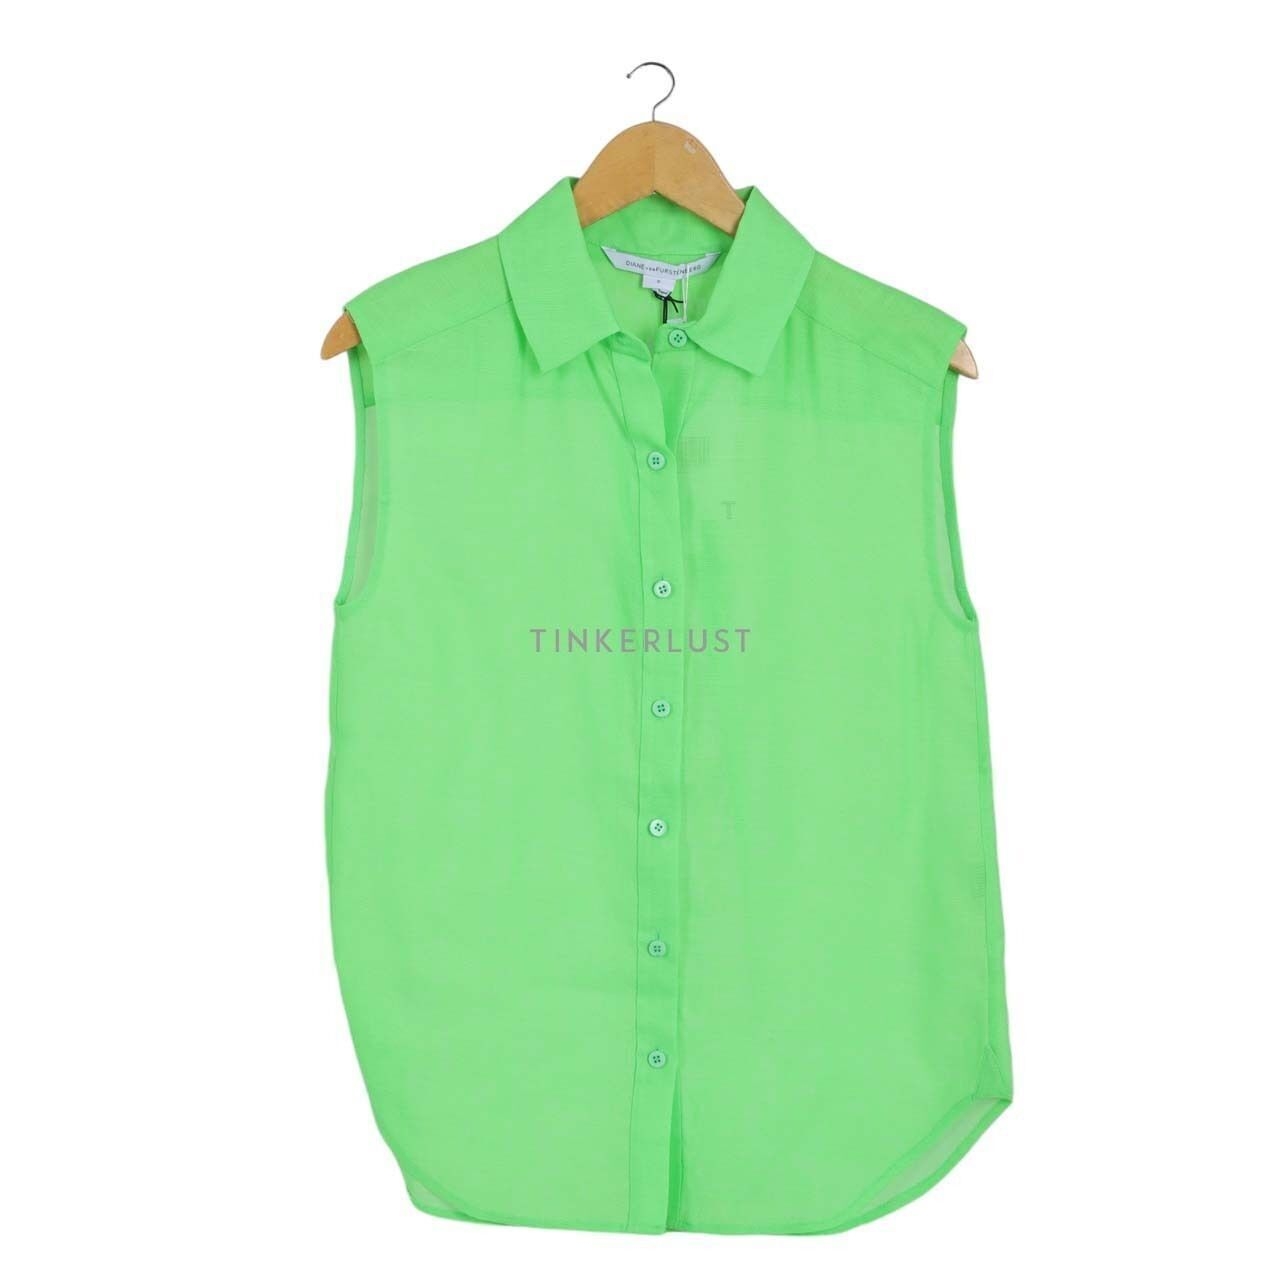 Diane von Furstenberg Green Neon Shirt Sleeveless